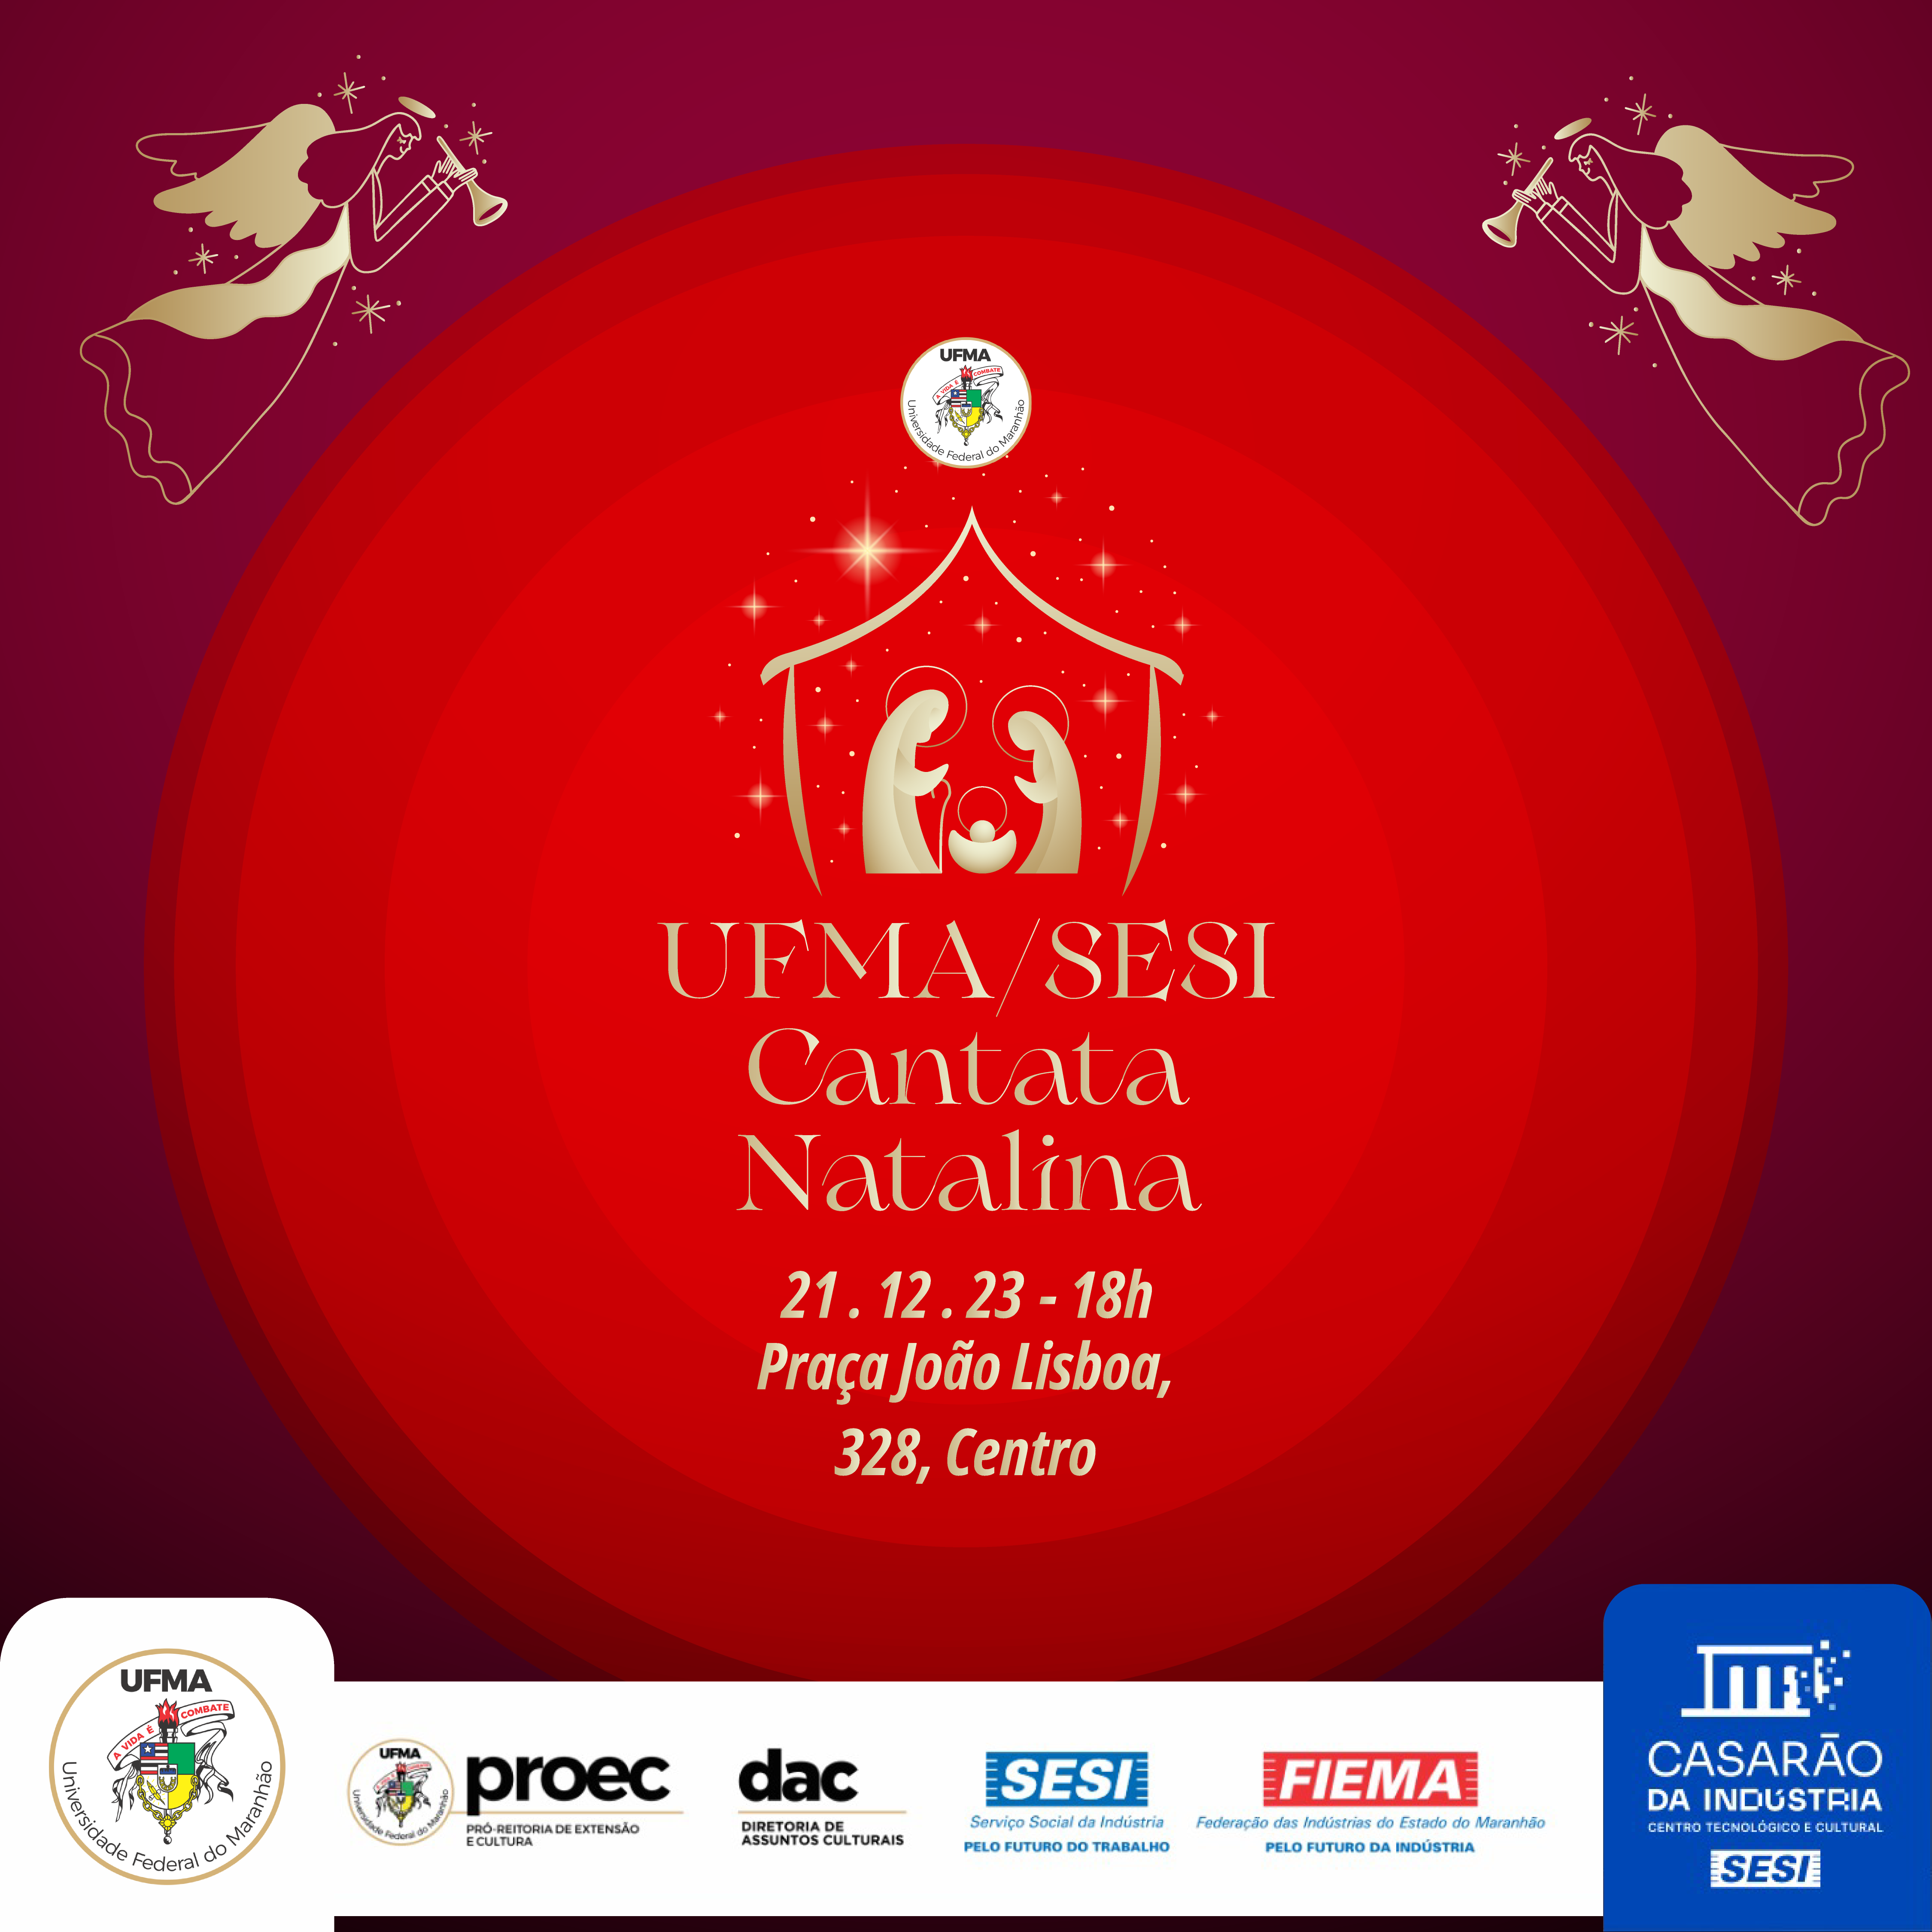 Magia do Natal: UFMA promove Cantata Natalina em parceria com o Sesi nessa quinta-feira, 21, na praça João Lisboa